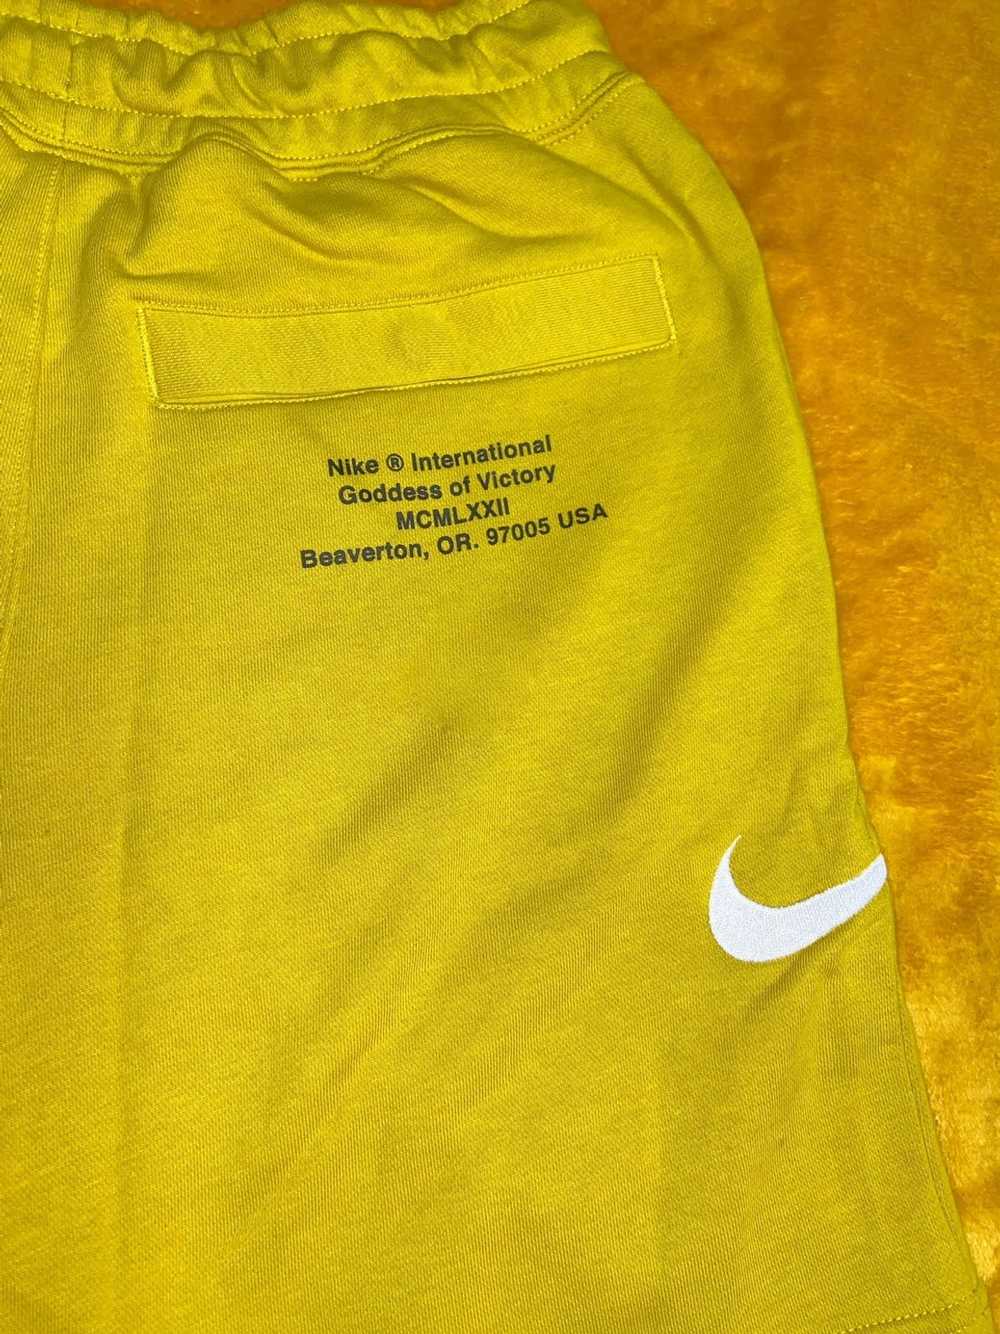 Nike Men’s Nike Sweat Shorts Size S - image 2